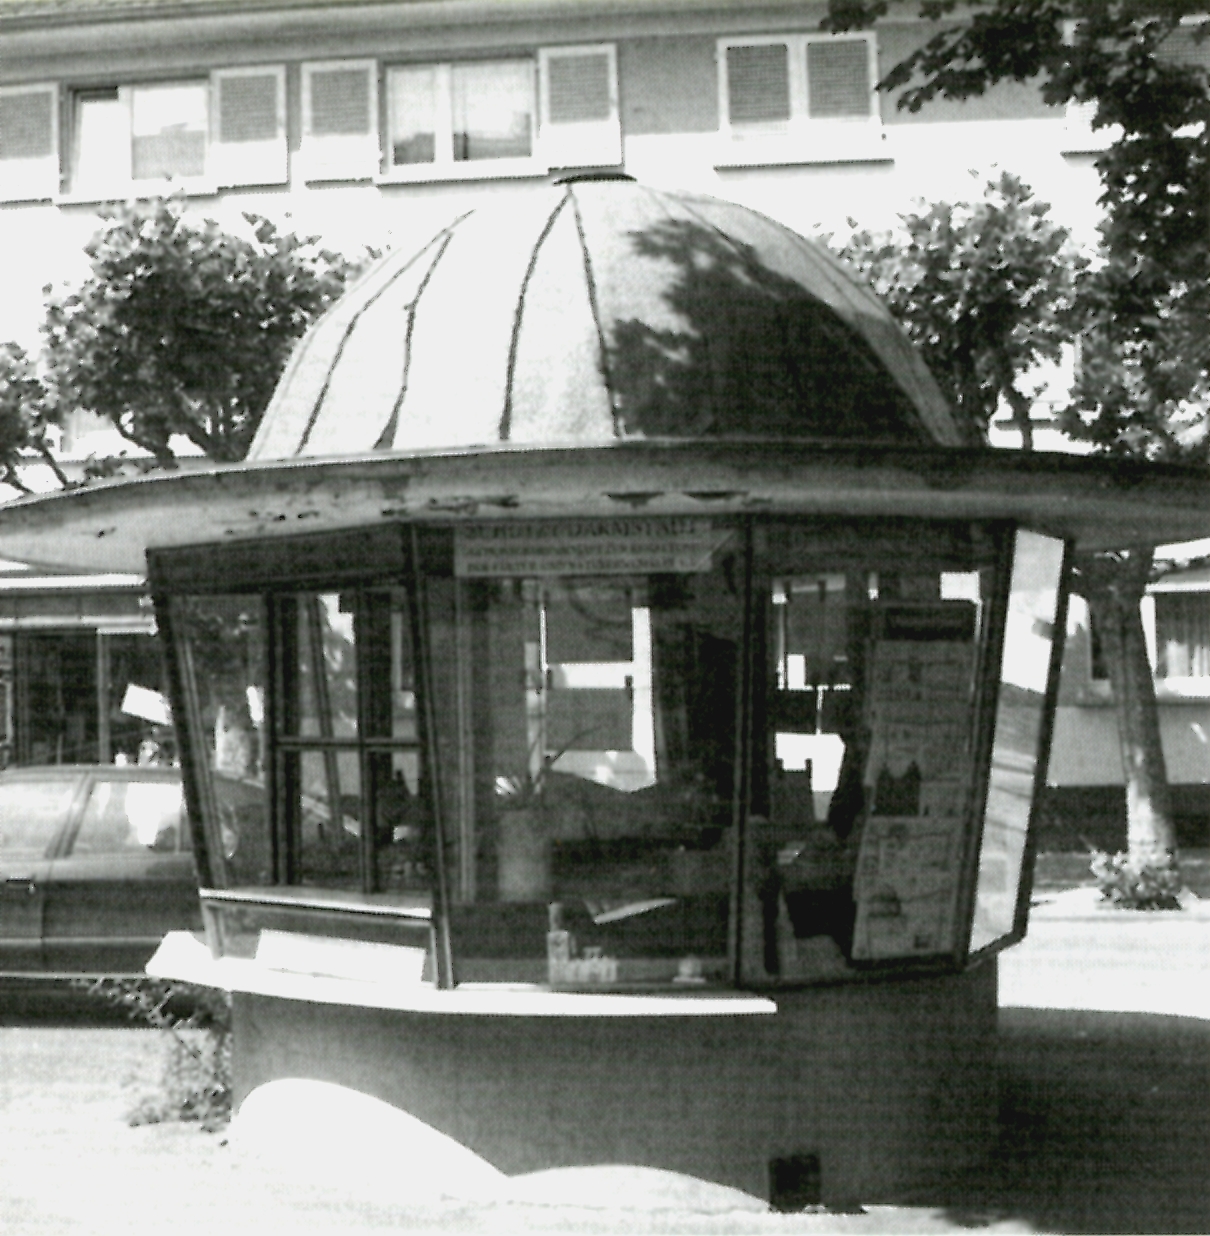 You are currently viewing Kiosk 1975: Wir suchen ZeitzeugInnen mit schönen Erlebnissen rund um den Postsiedlungs-Kiosk